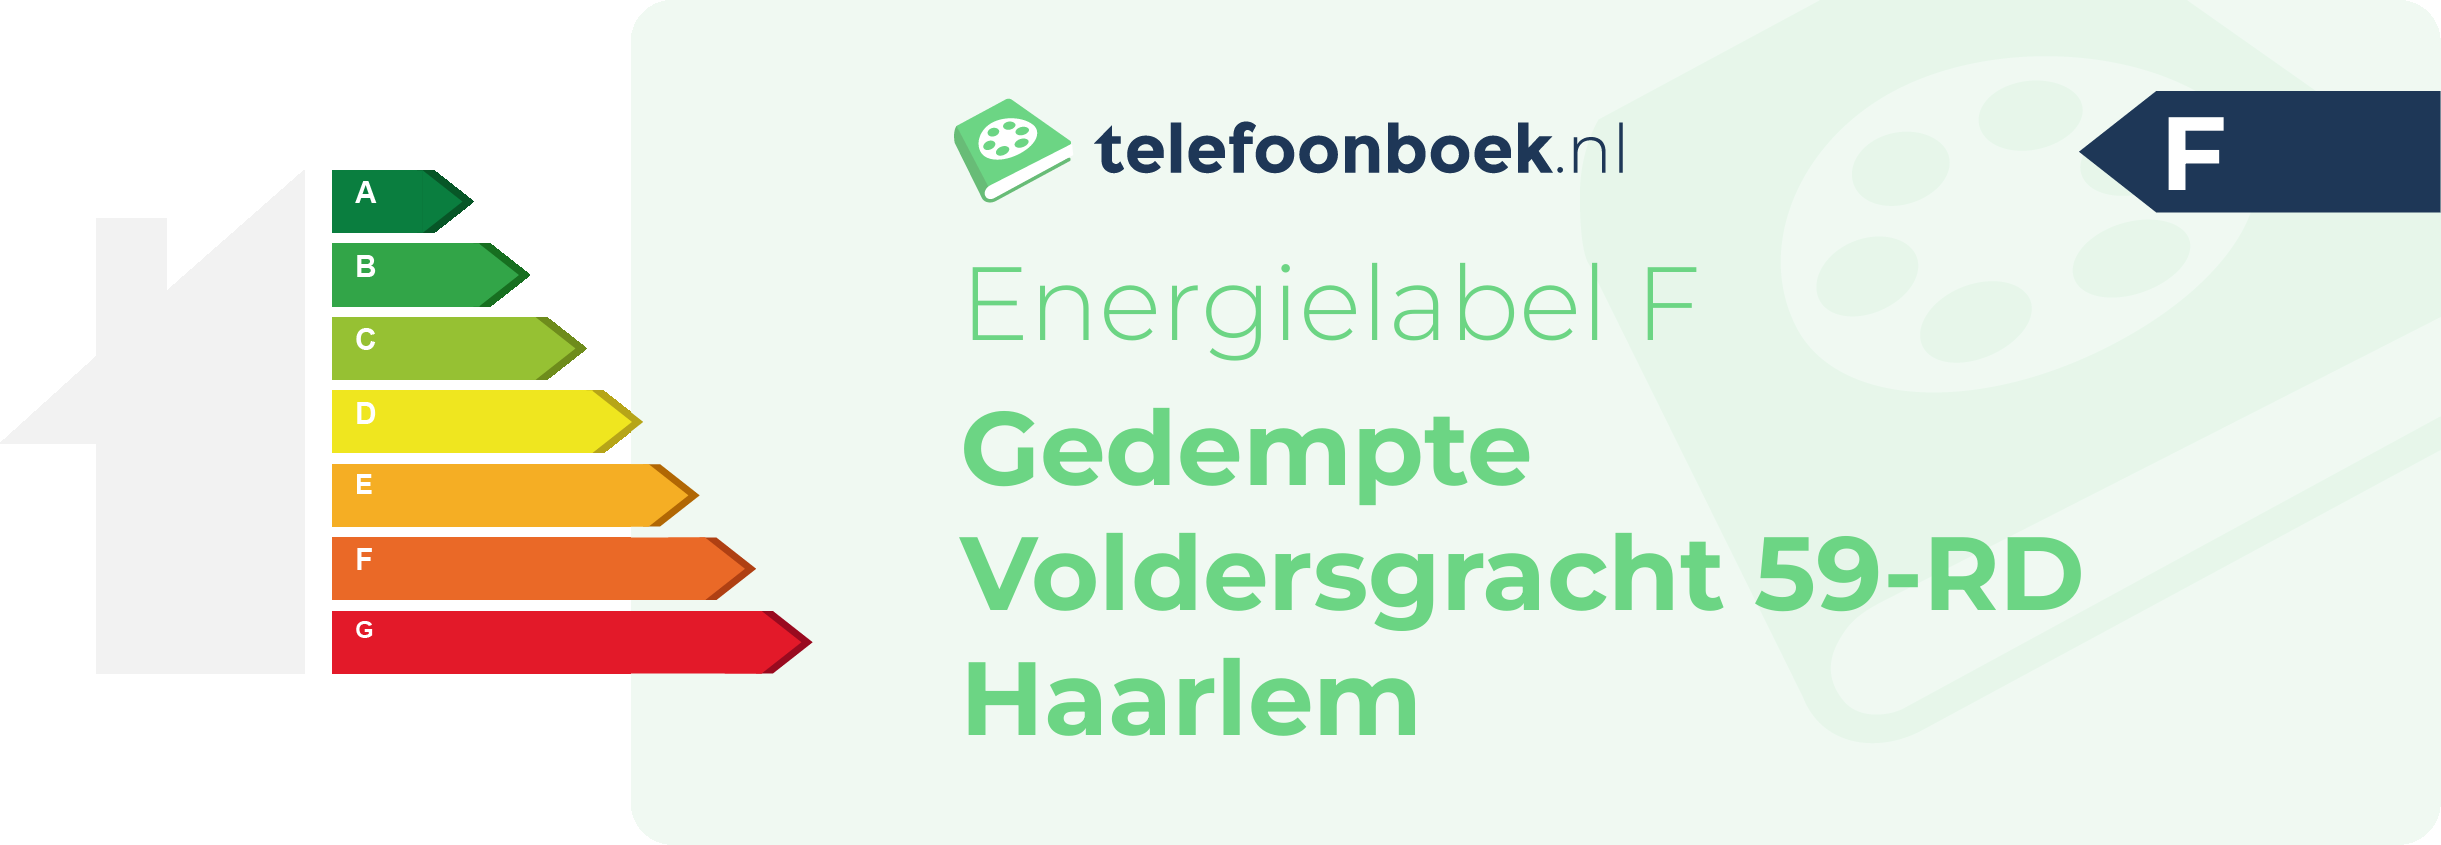 Energielabel Gedempte Voldersgracht 59-RD Haarlem